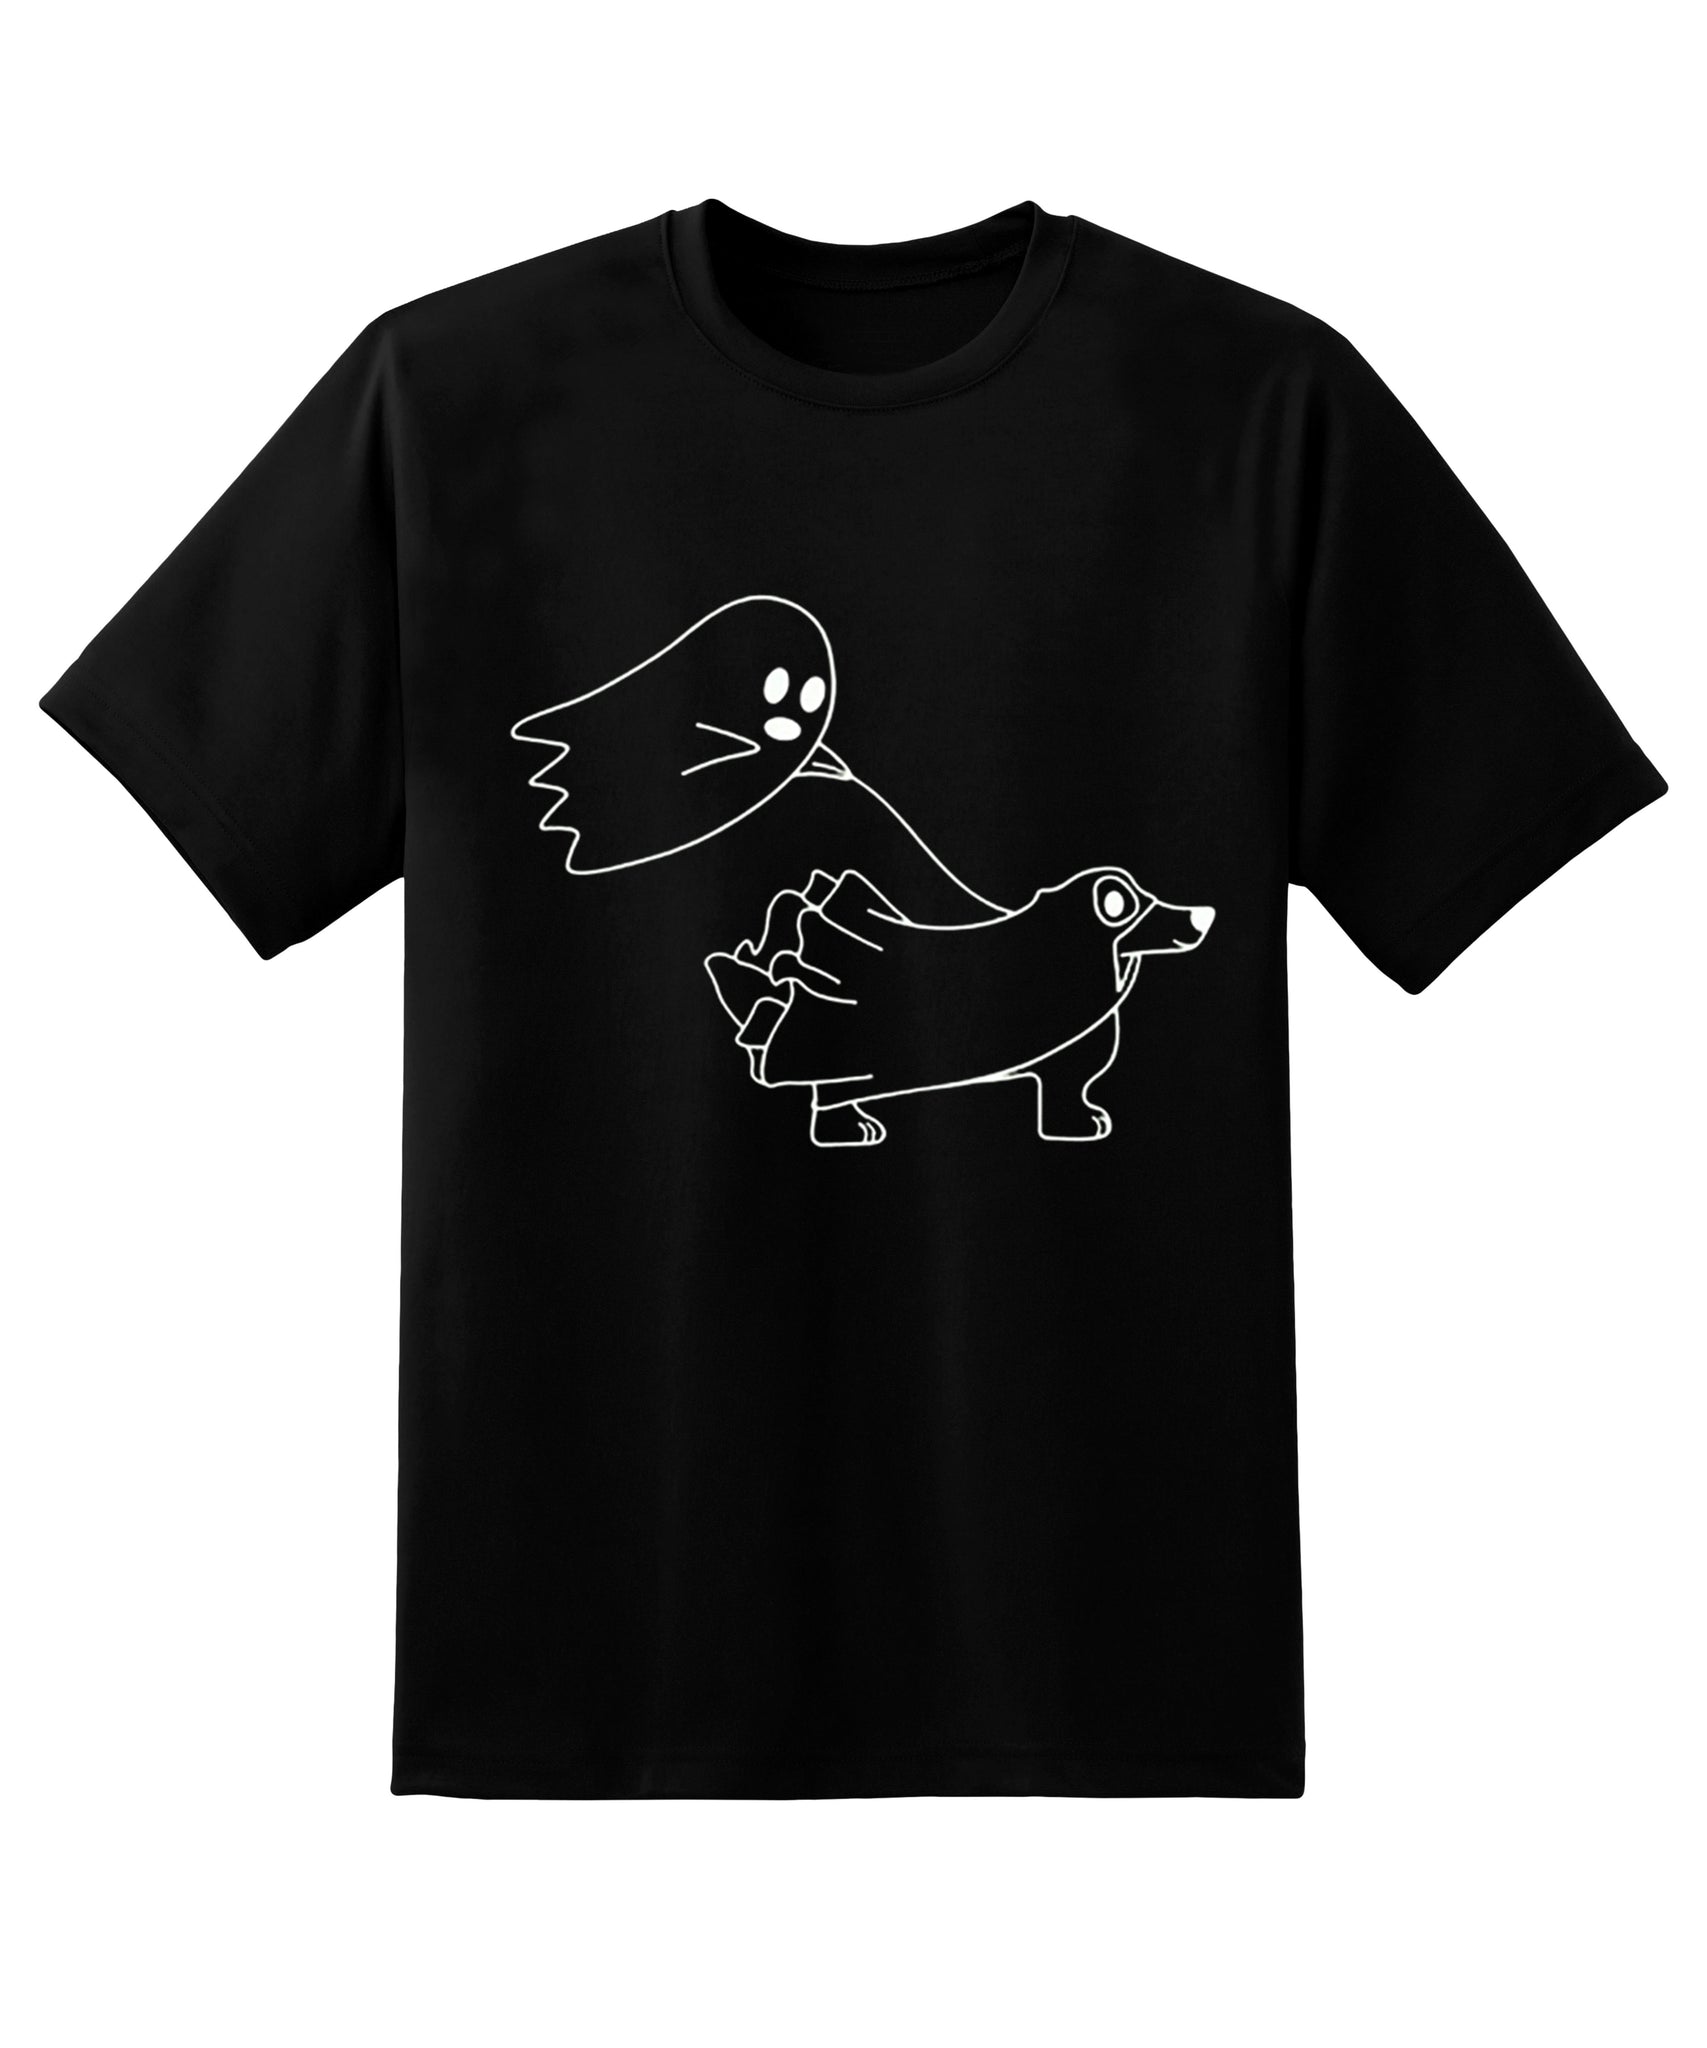 Skitongift Ghost Dog T-Shirt,Halloween Dogs T-Shirt,Cute Dogs T-Shirt,Ghost T-Shirt,Halloween Dog Shirt,Ghost Dog Shirt